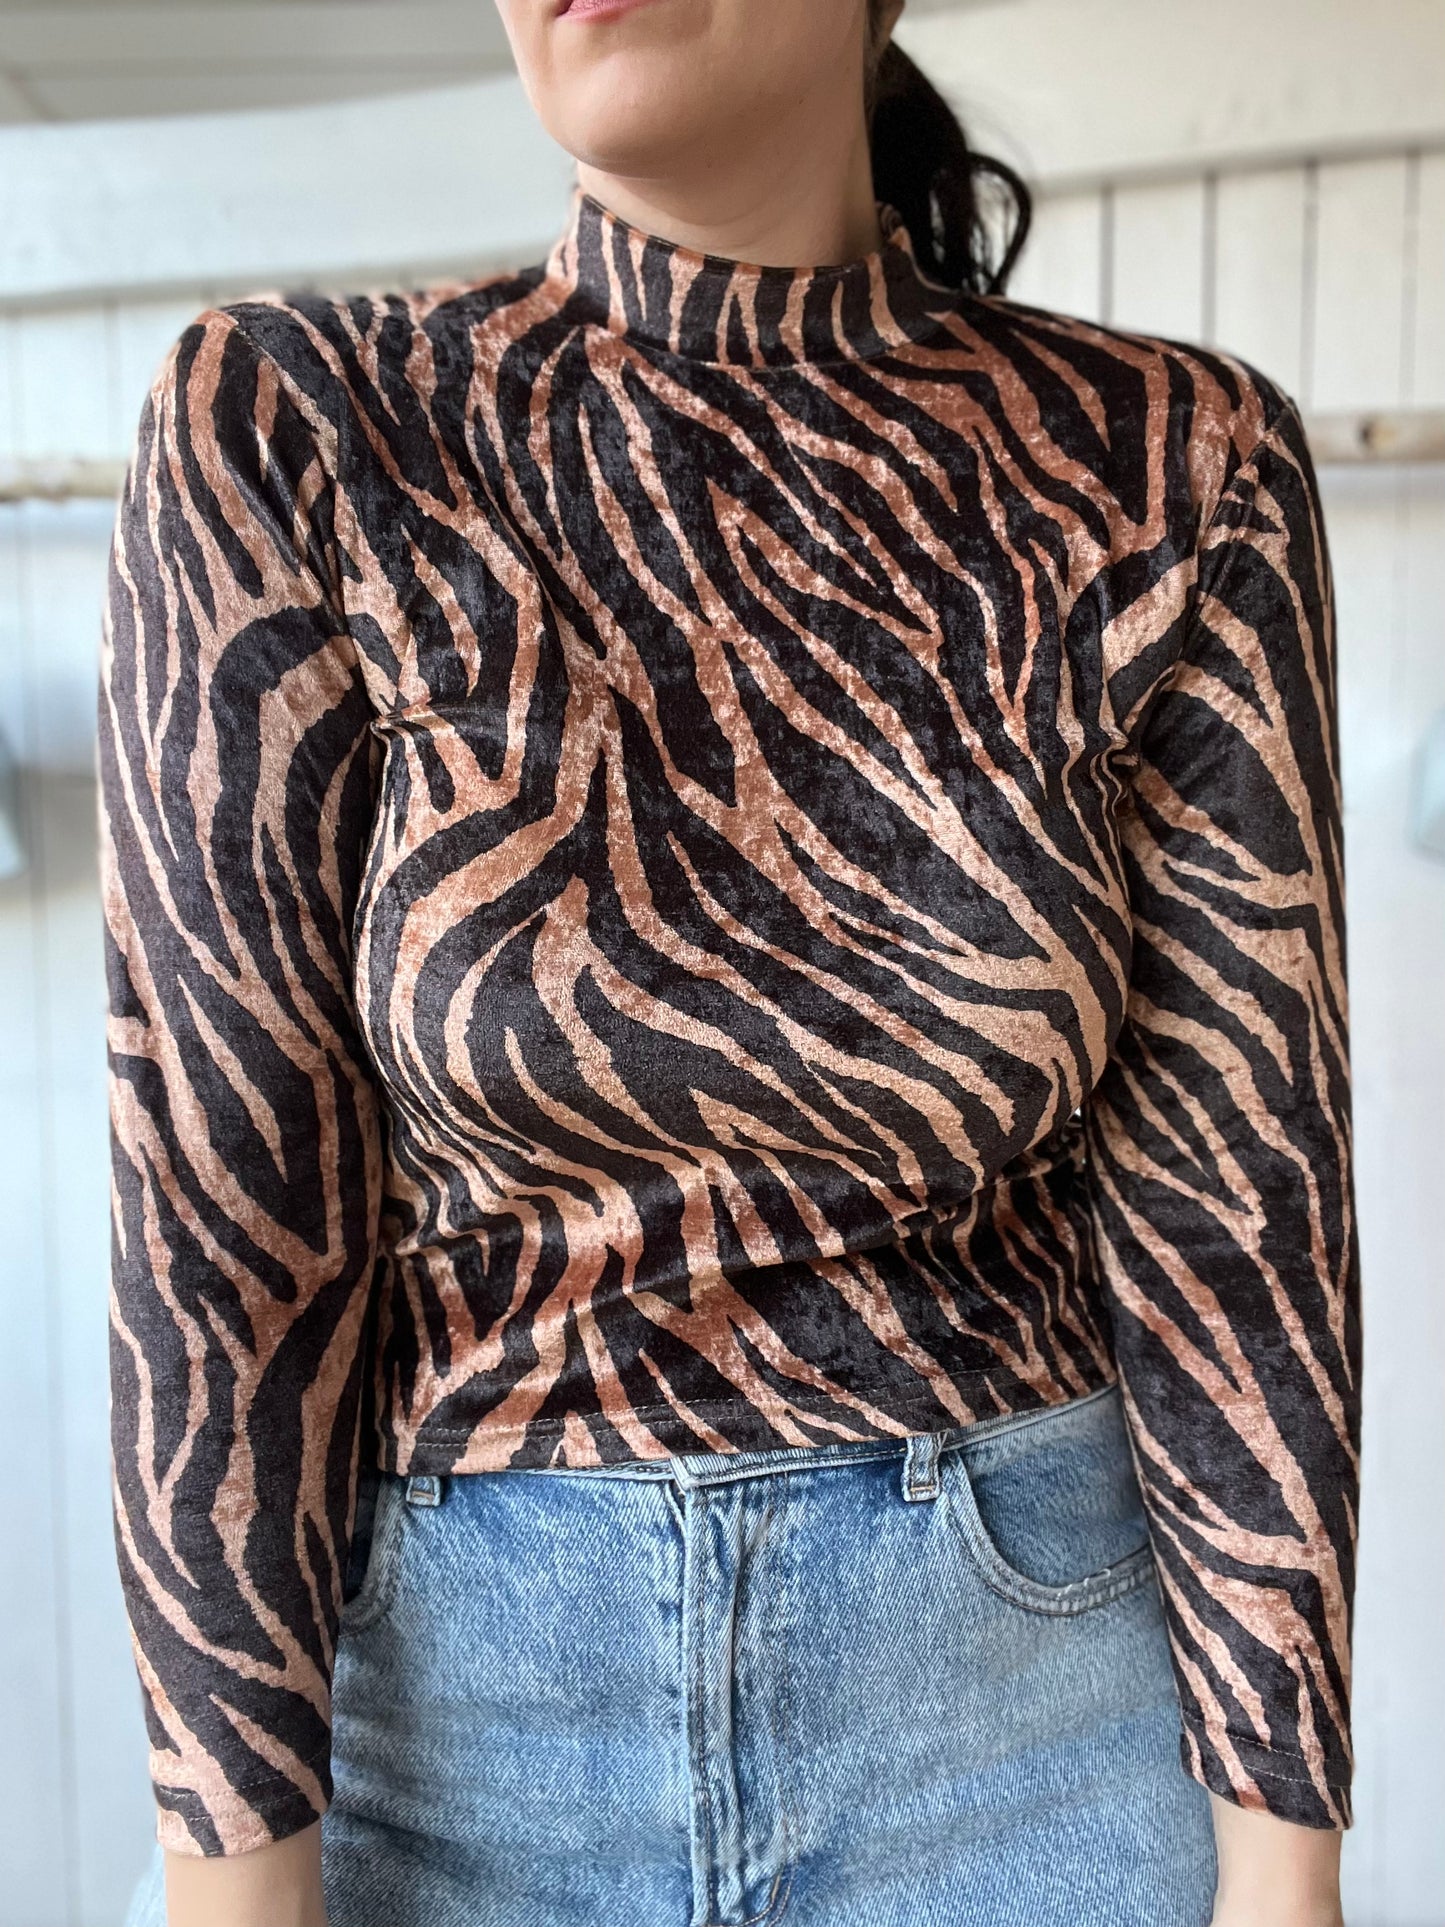 Velvet Zebra Crop Top - Size S